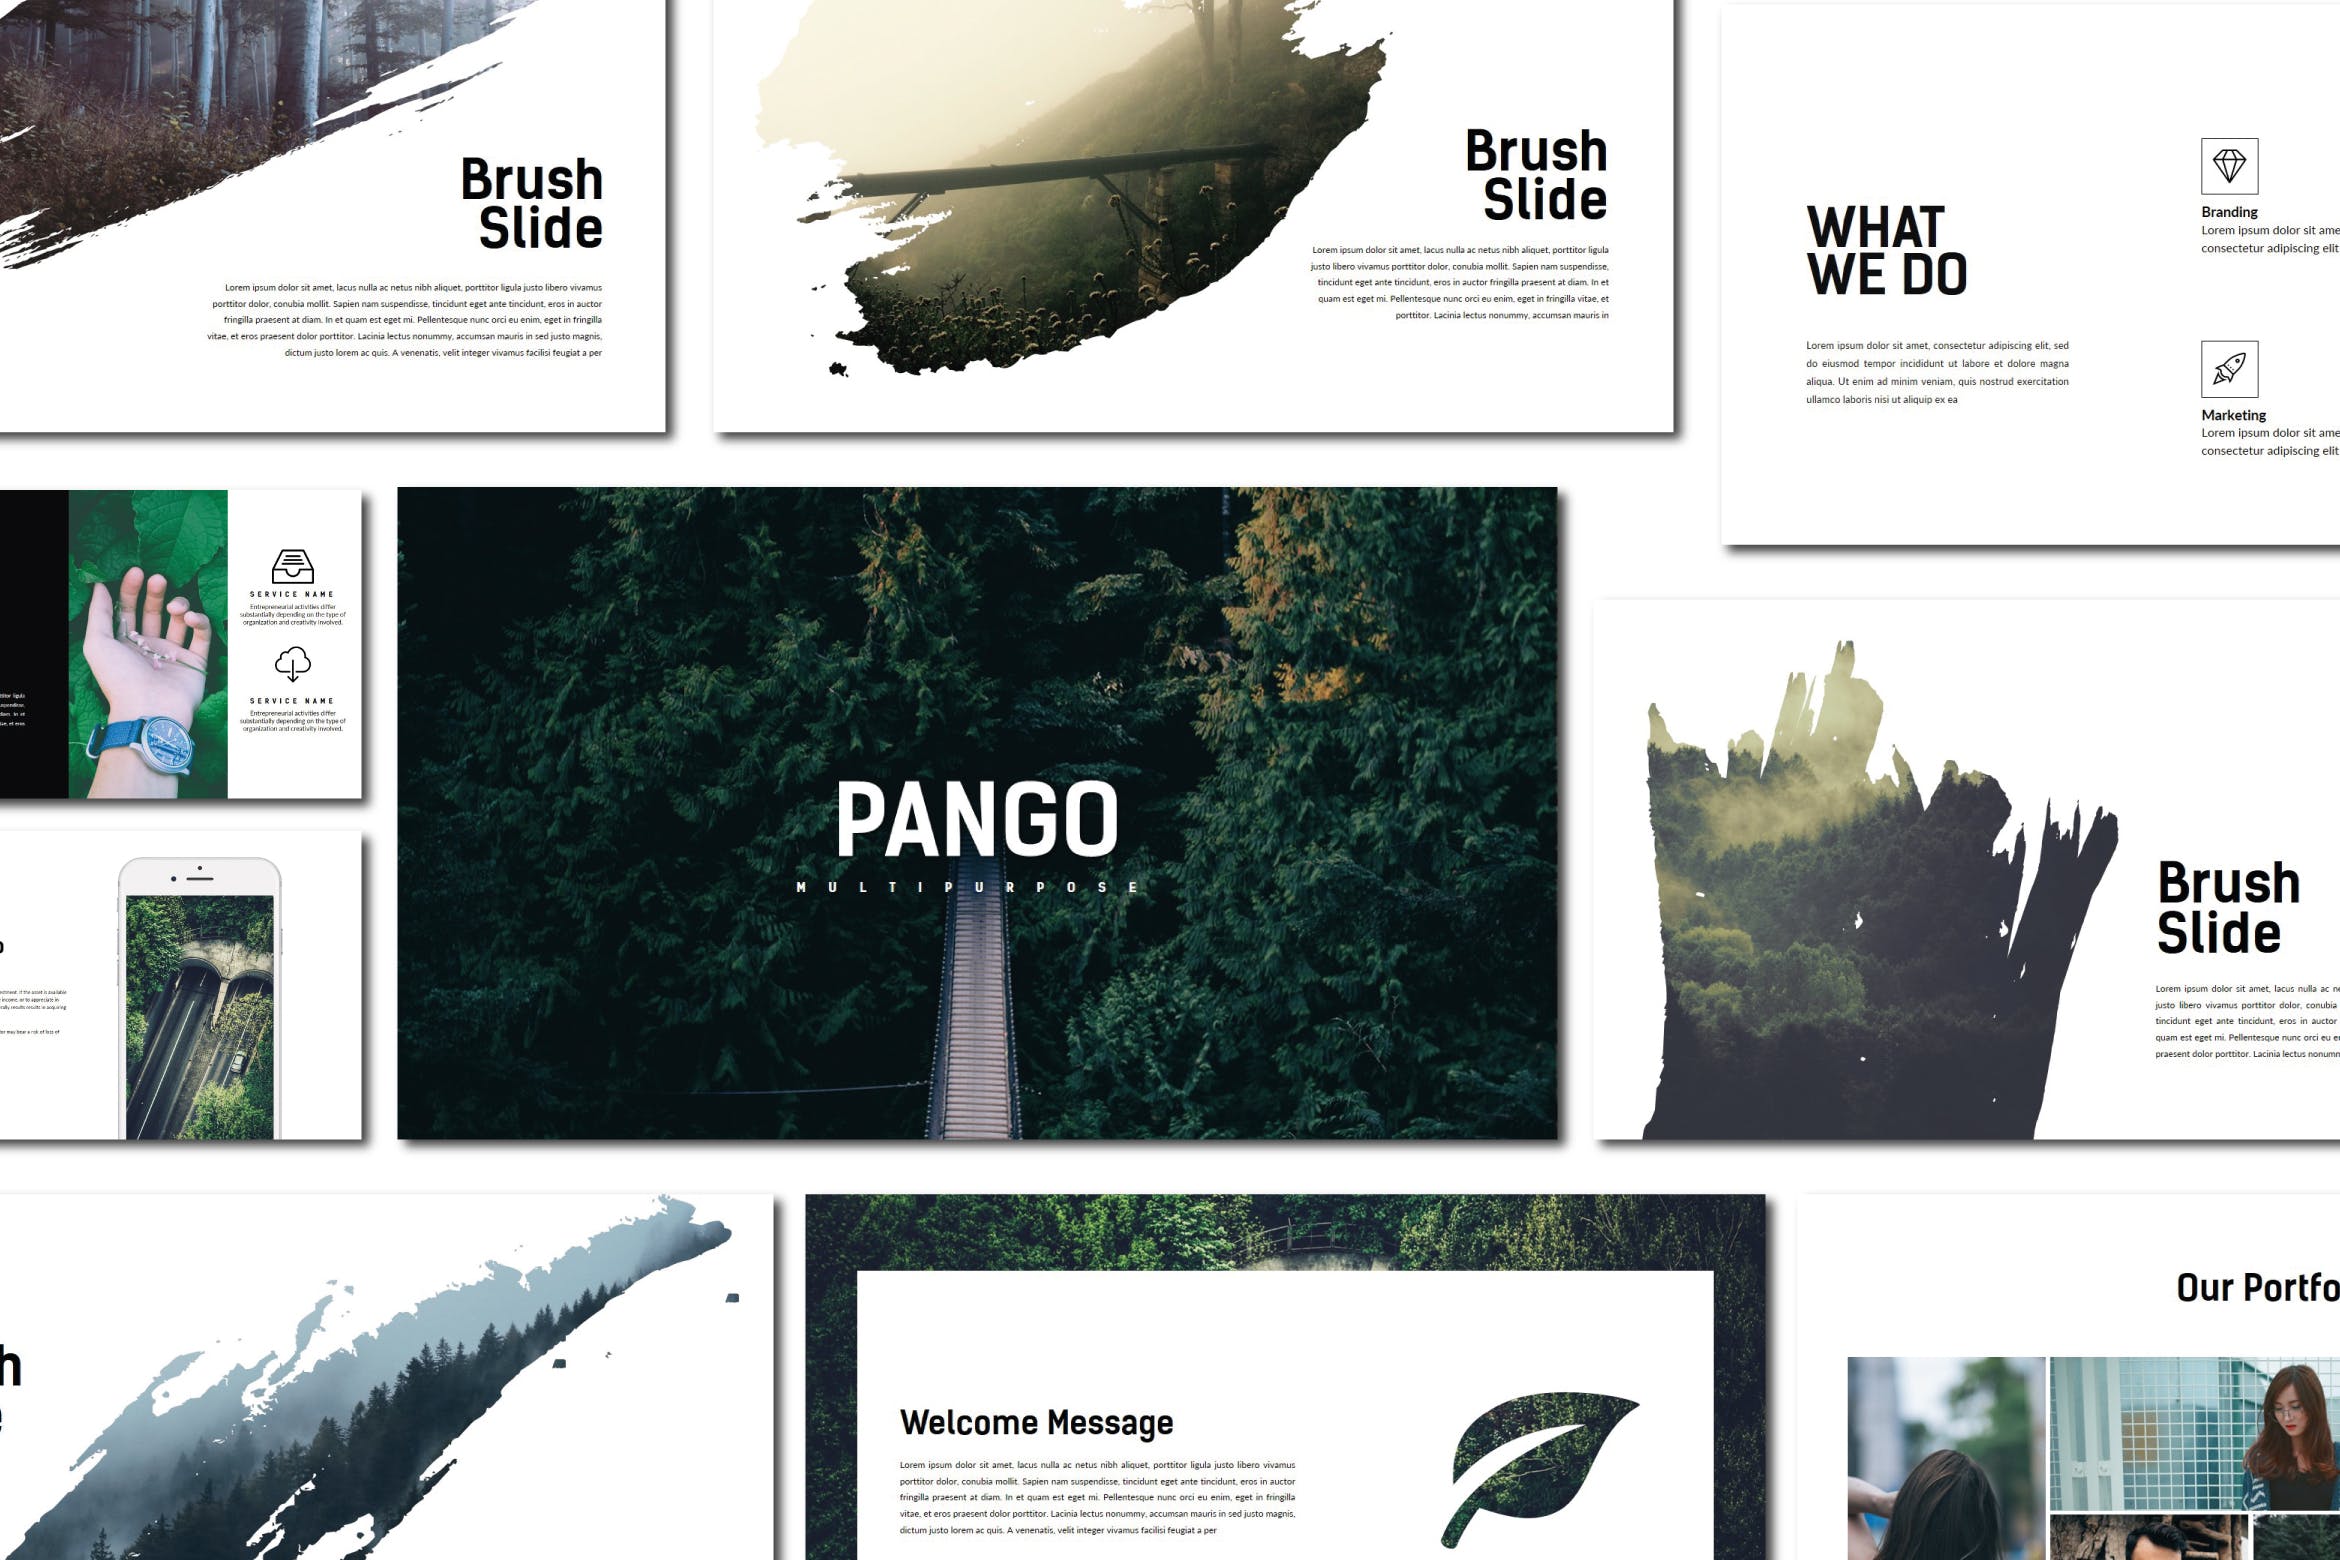 创意摄影/设计/策划工作室16素材精选PPT模板 Pango | Powerpoint Template插图